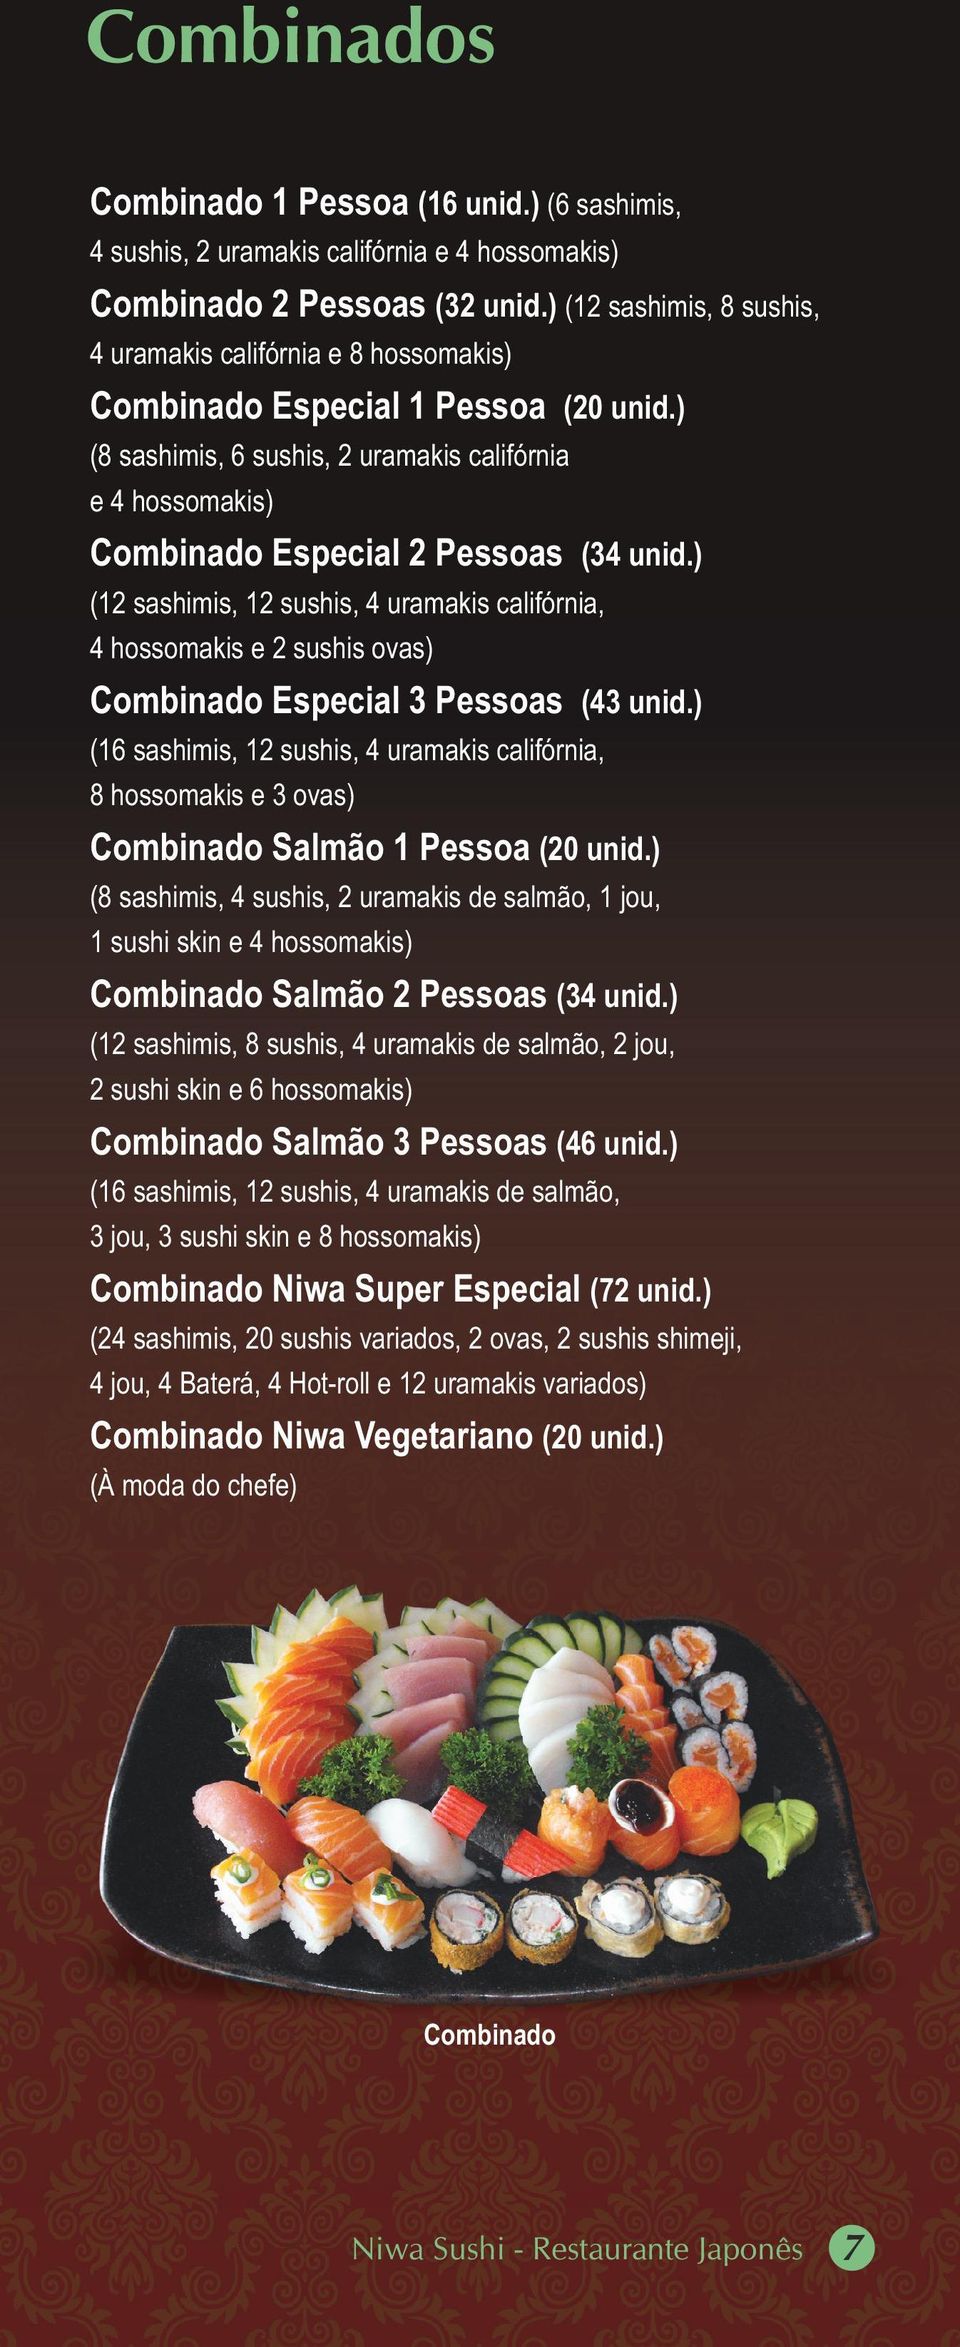 ) (8 sashimis, 6 sushis, 2 uramakis califórnia e 4 hossomakis) Combinado Especial 2 Pessoas (34 unid.